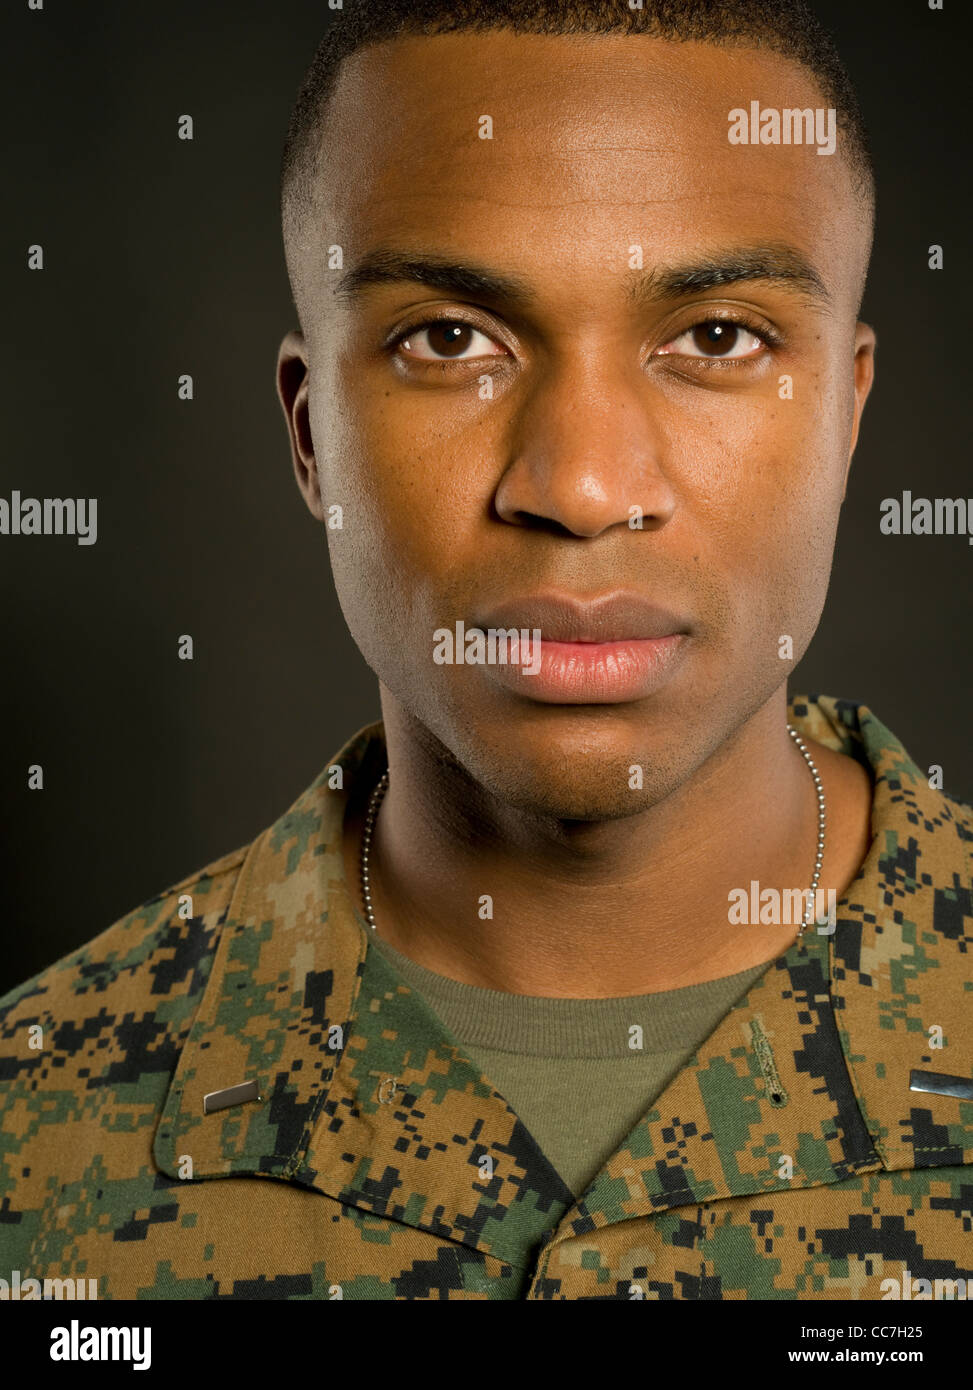 United States Marine Corps Officier Marine Corps Lutte contre l'uniforme de l'utilitaire camouflage MARPAT woodland pattern numérique Banque D'Images